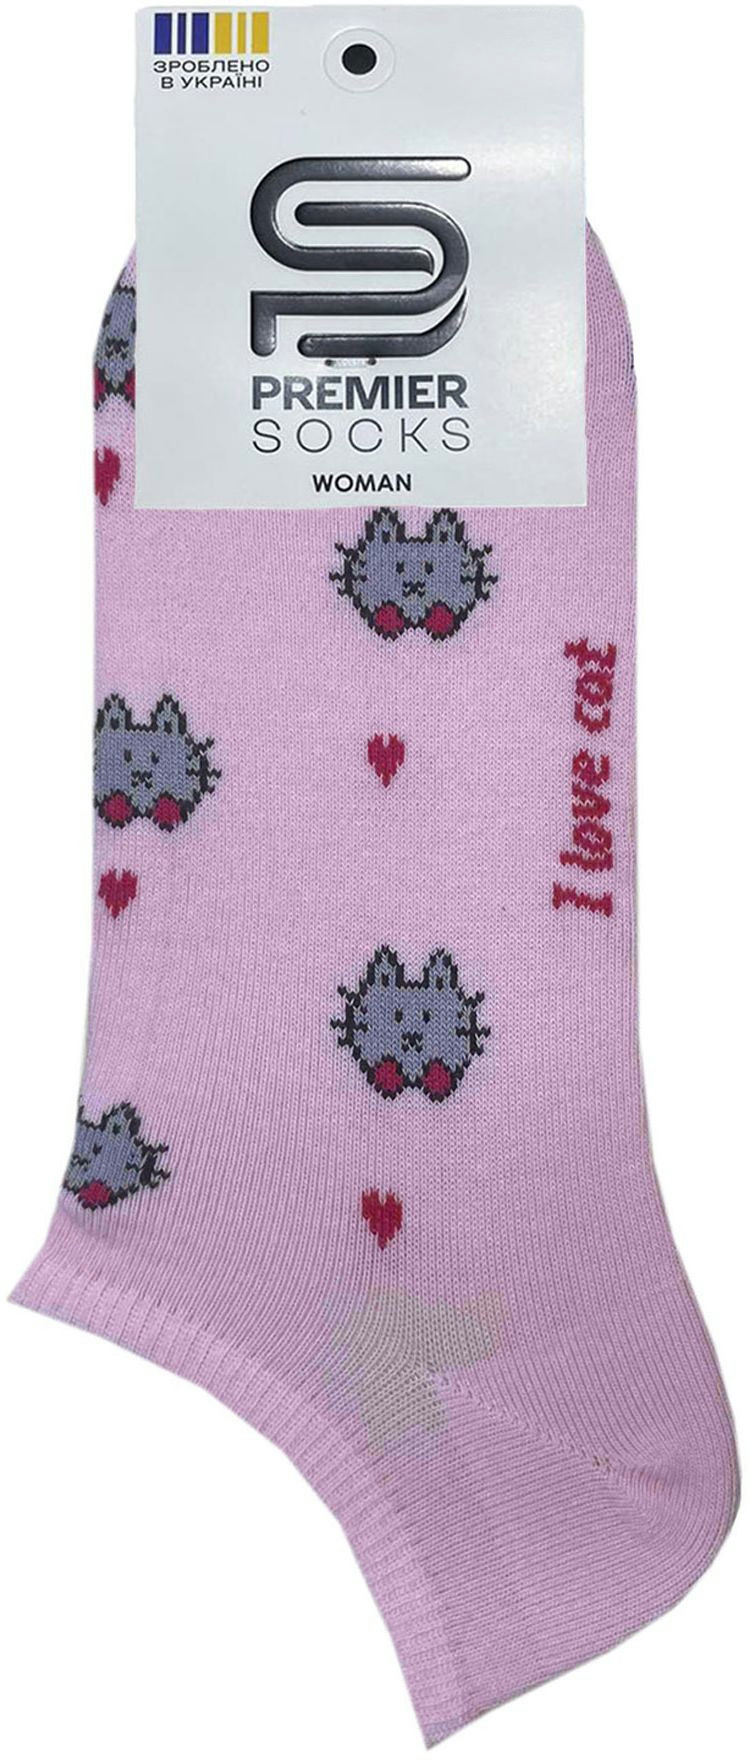 Носки женские Premier Socks 36-40 1 пара розовые с принтом Коты (4820163318899)фото2